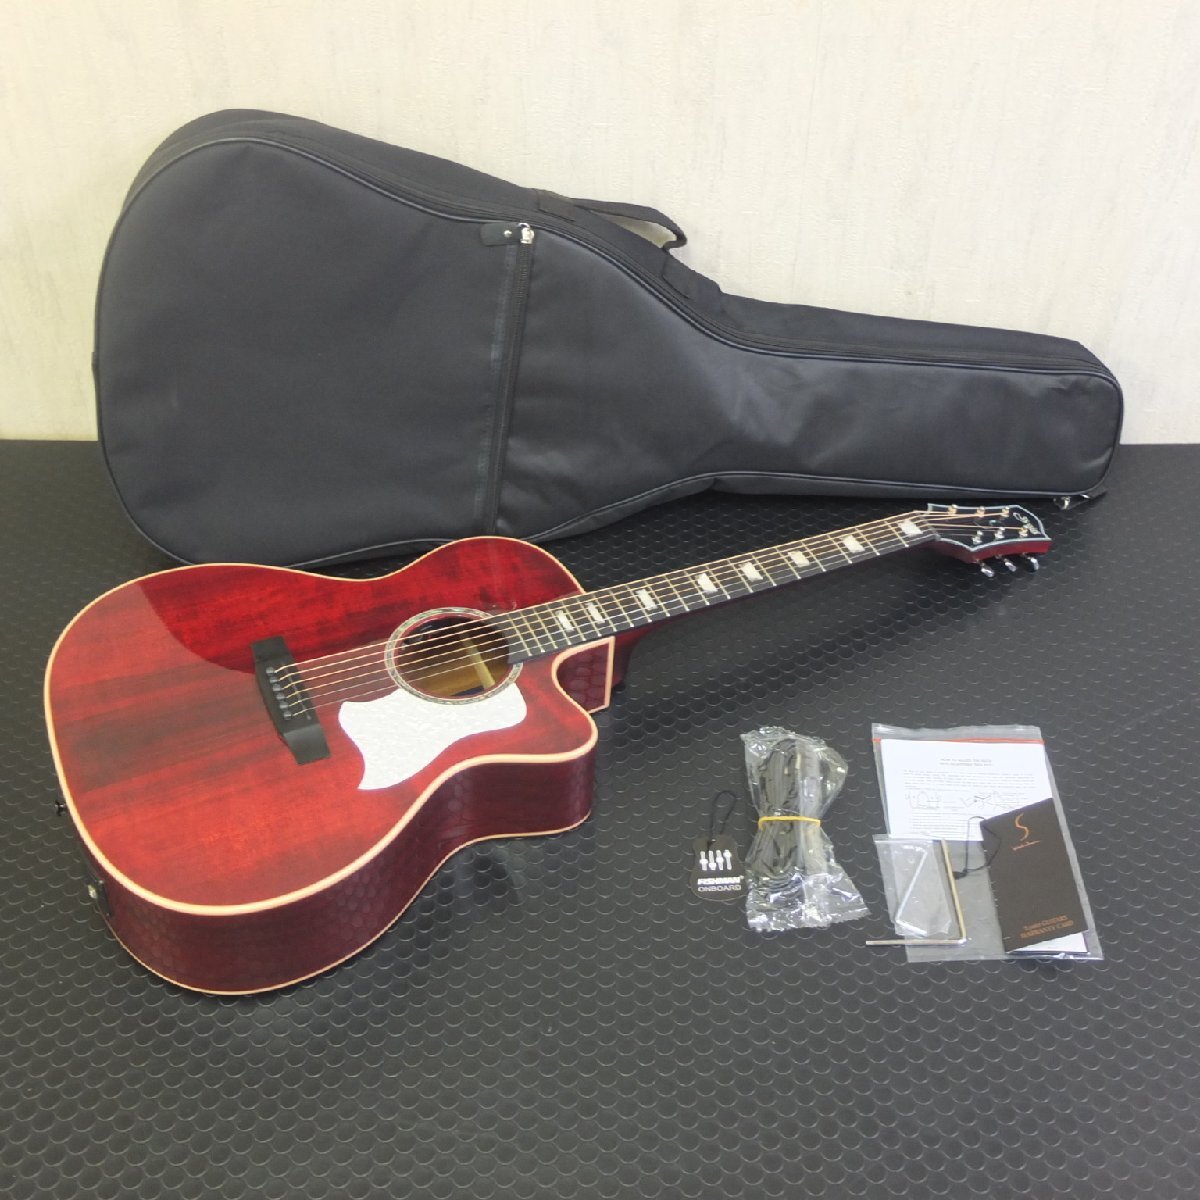 新品未使用品♪ S.Yairi YATK-1400EC/WR ワインレッド Advanced Series アコースティックギター エレアコ ソフトケース付_画像1